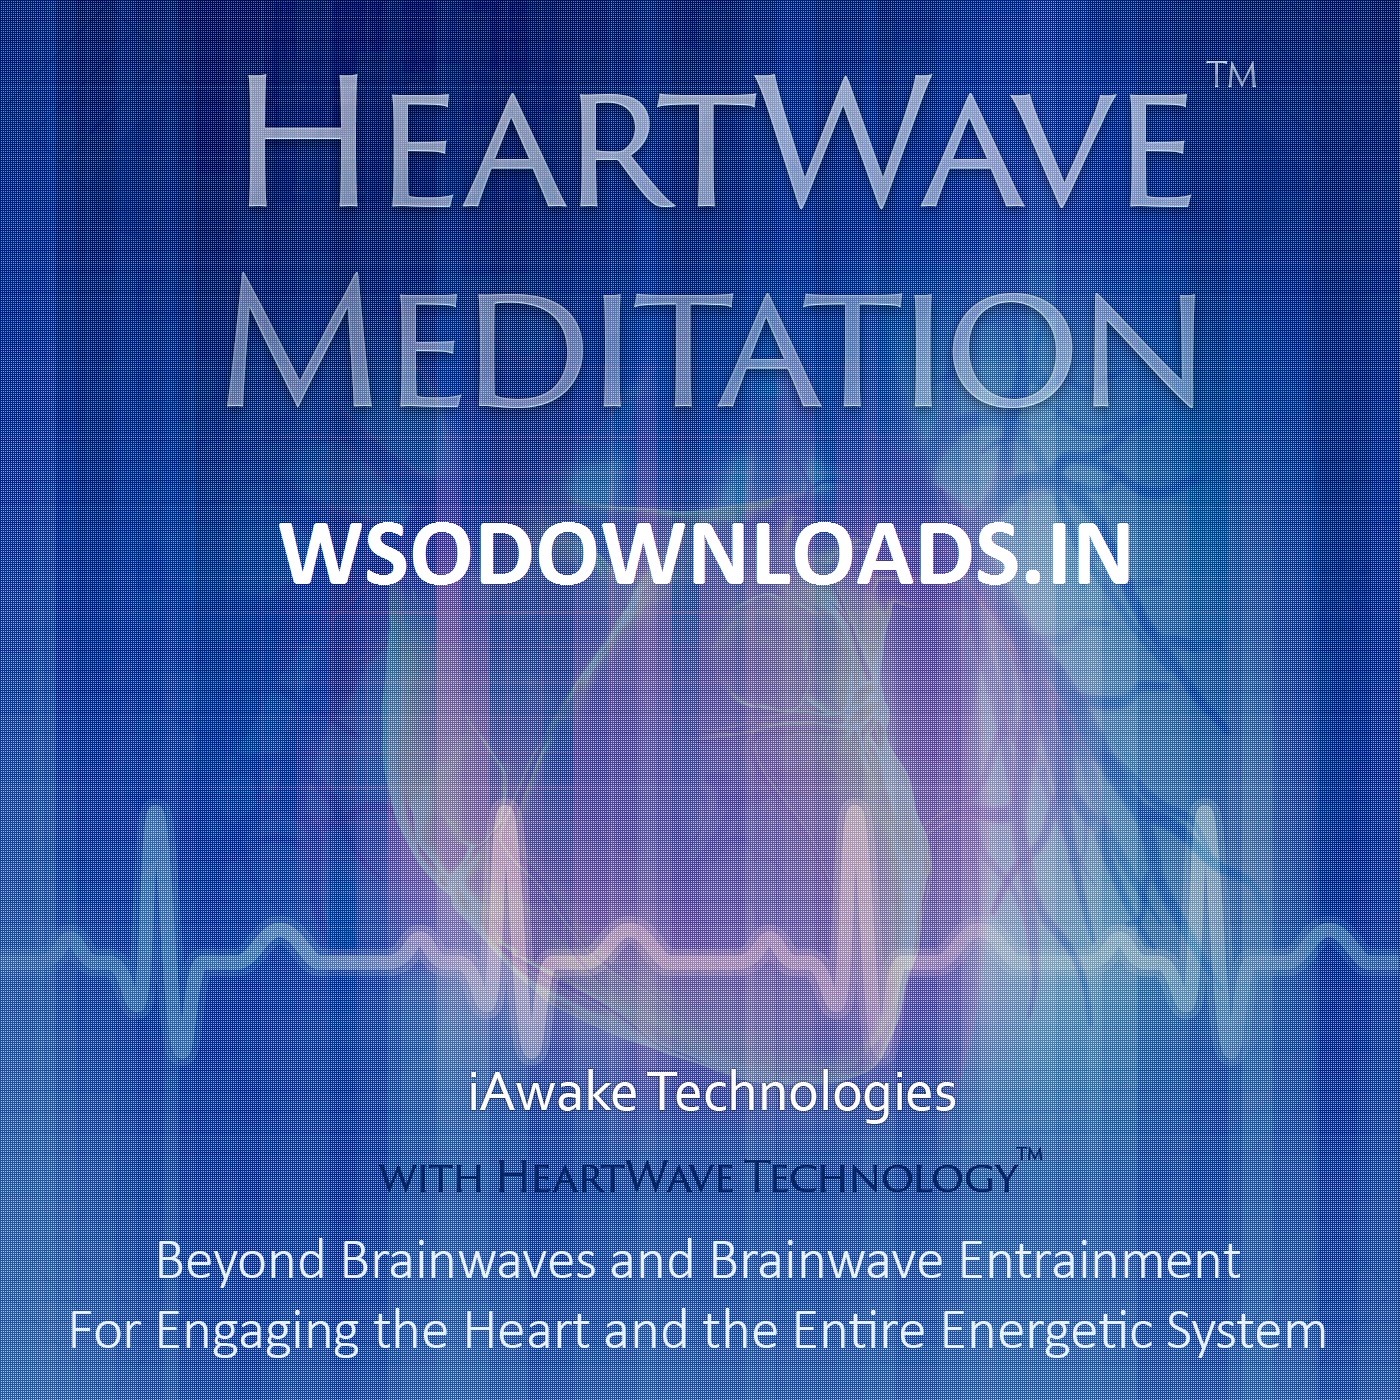 [SUPER HOT SHARE] HeartWave Meditation™ Download